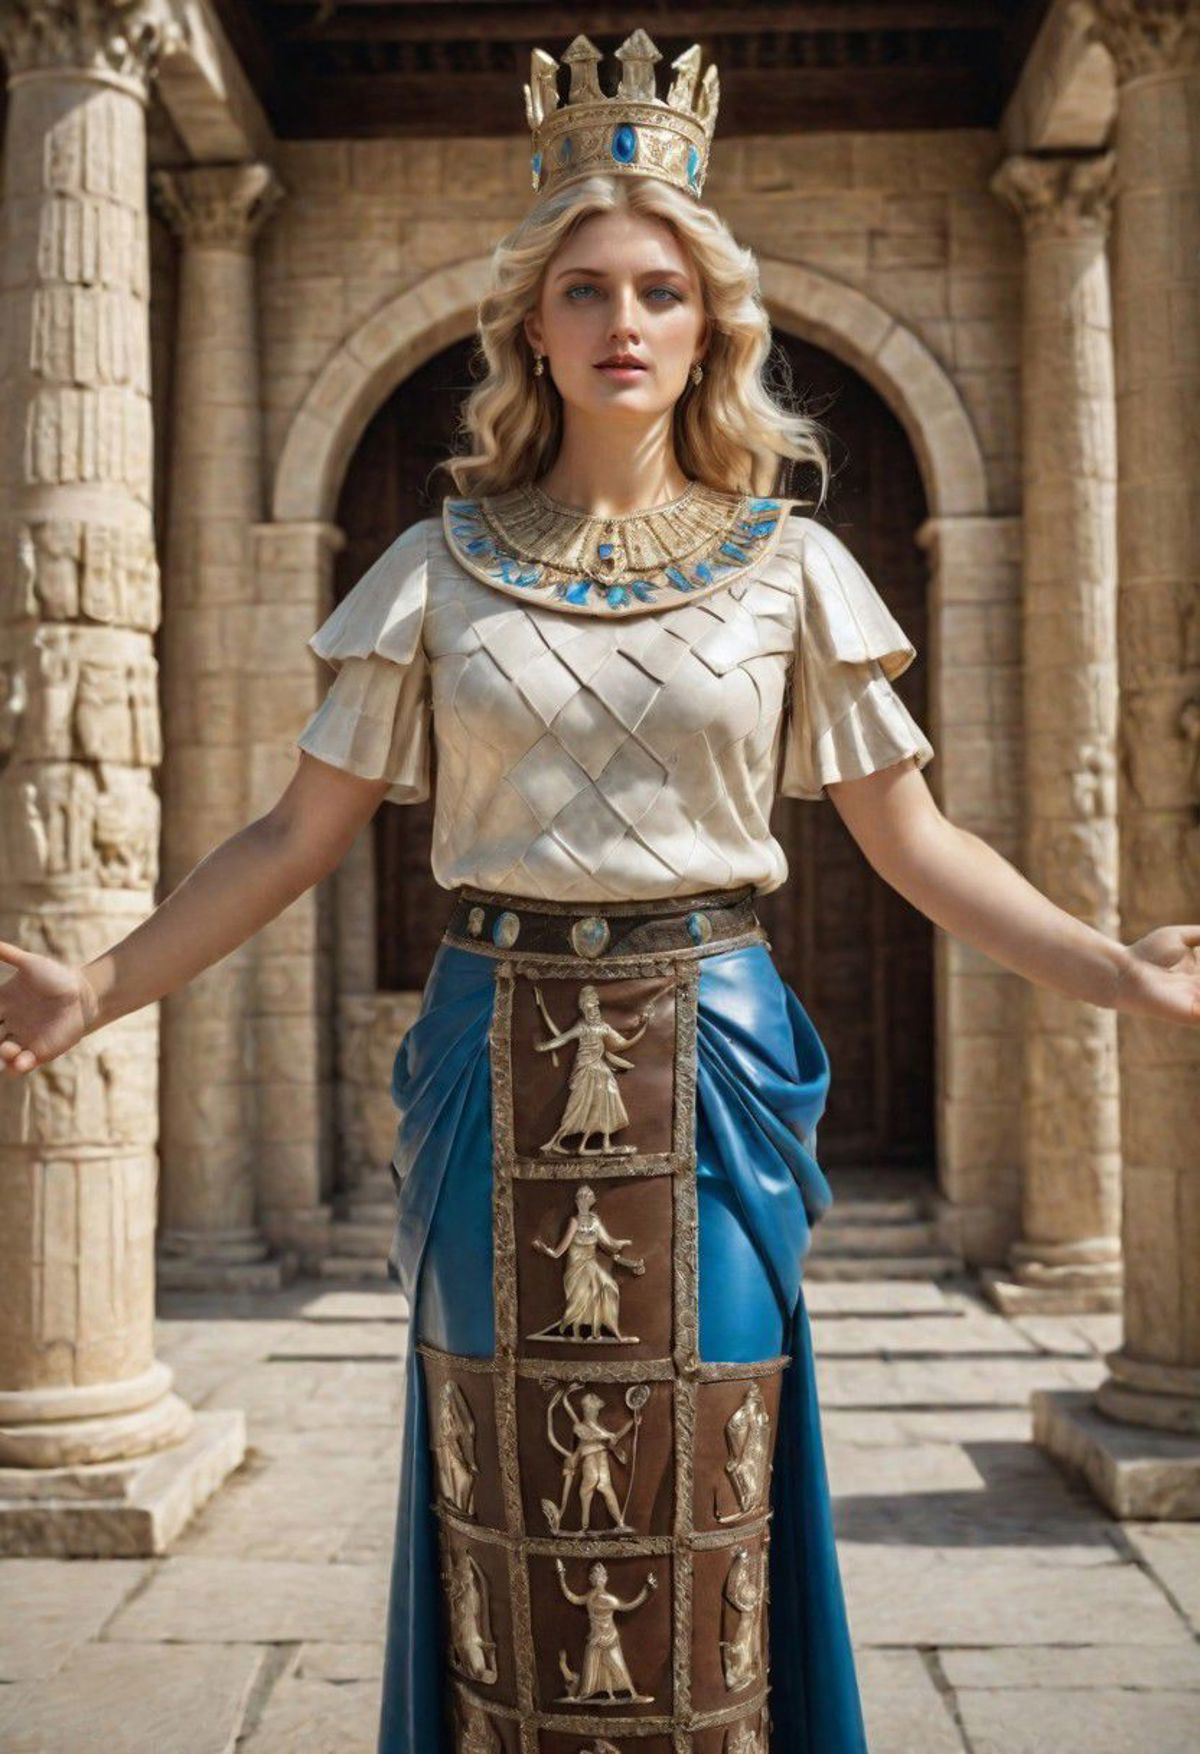 Artemis Ephesus image by cristianchirita749